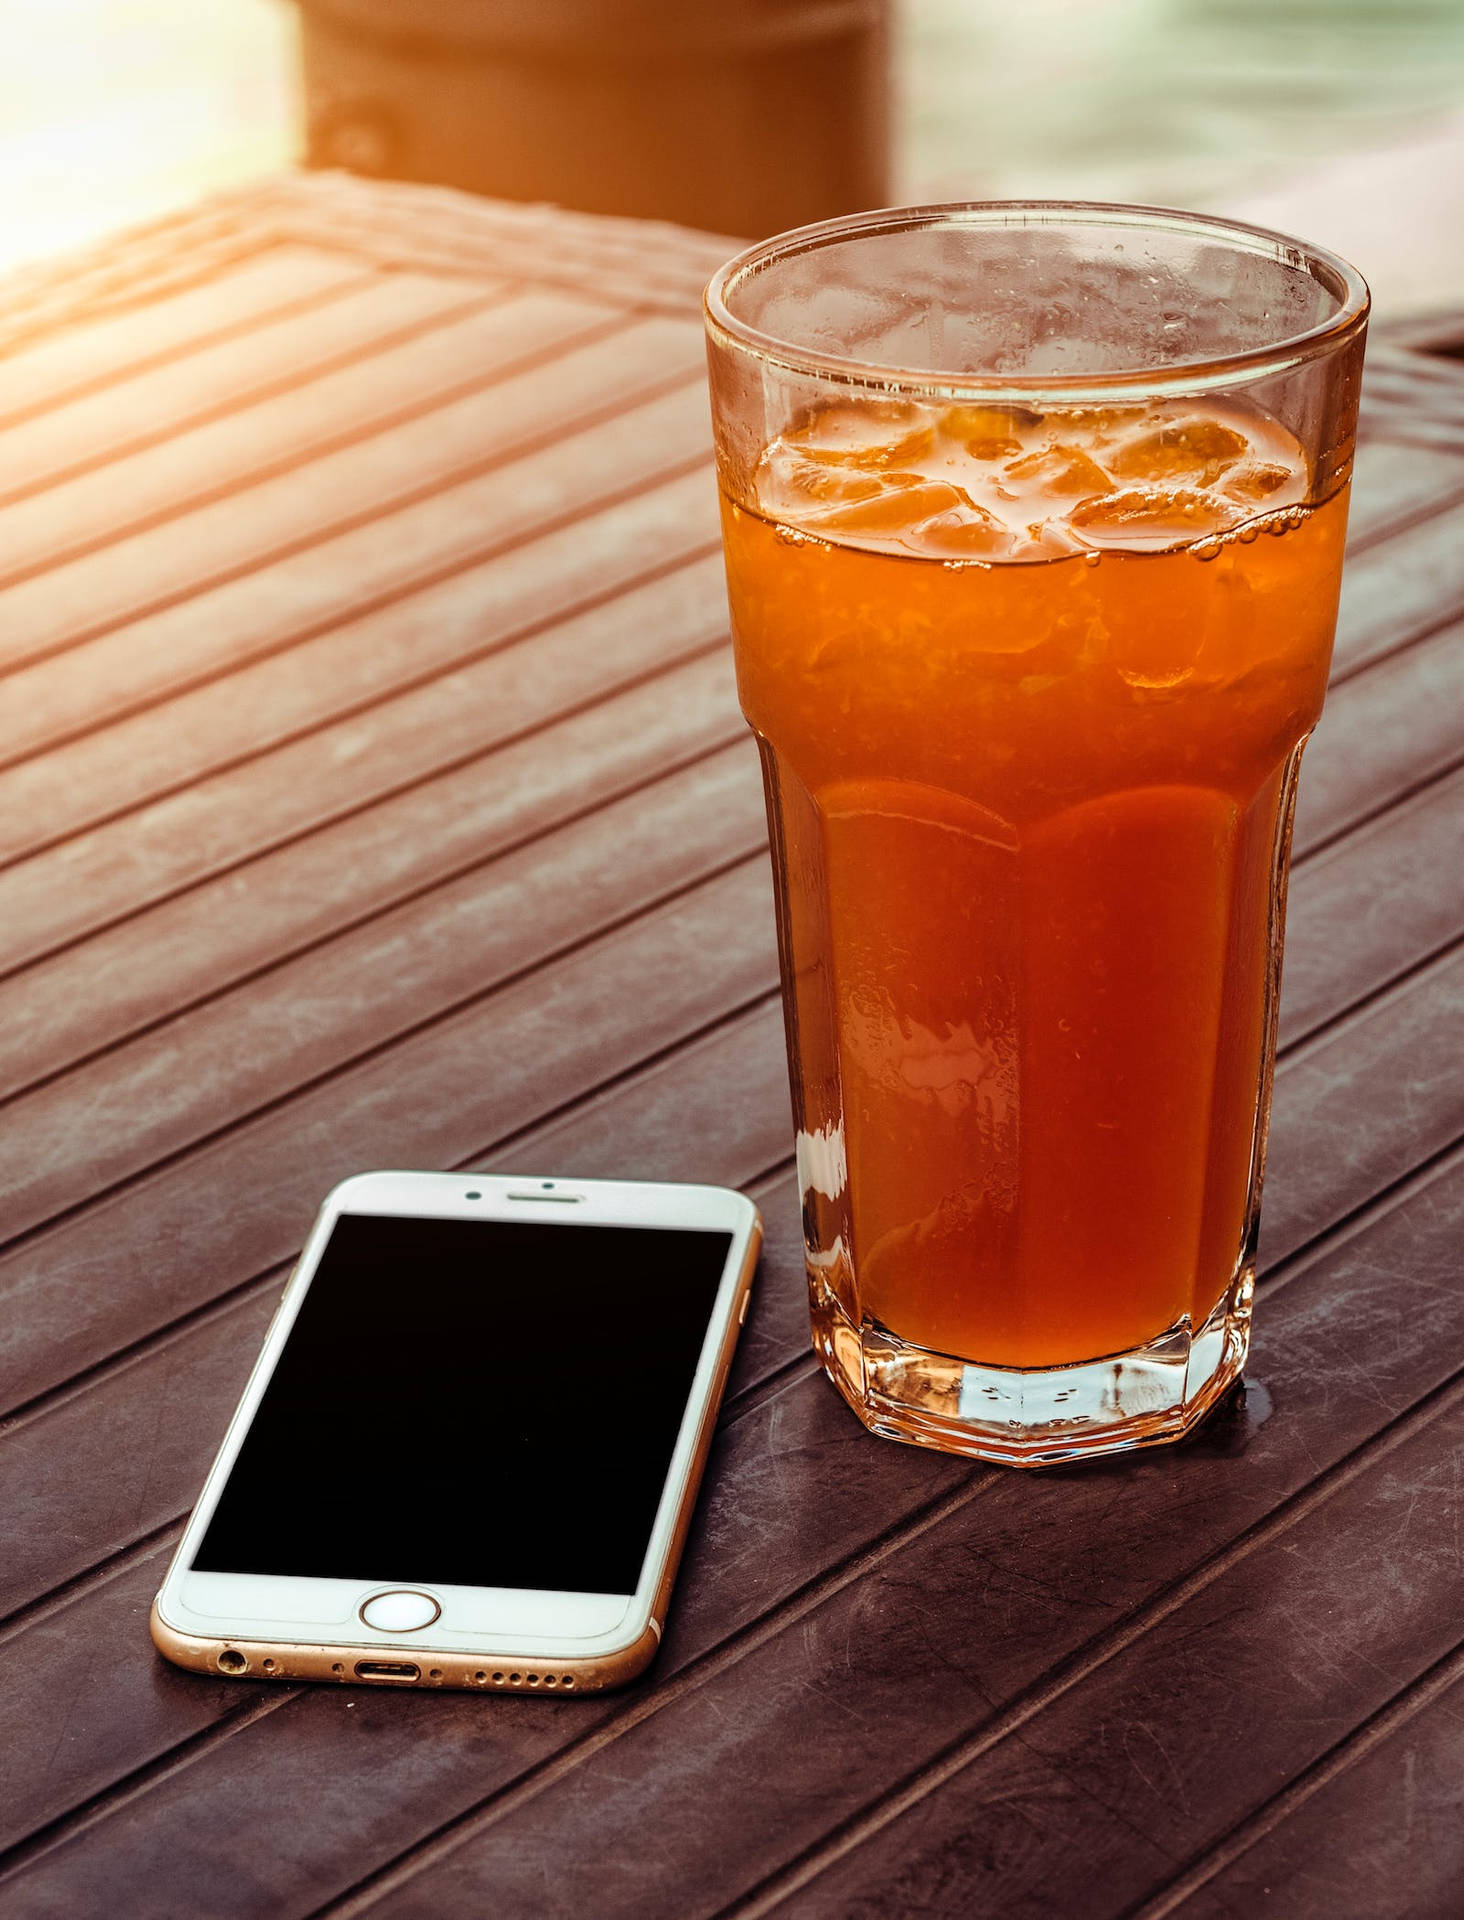 Original Iphone 6 And Orange Juice